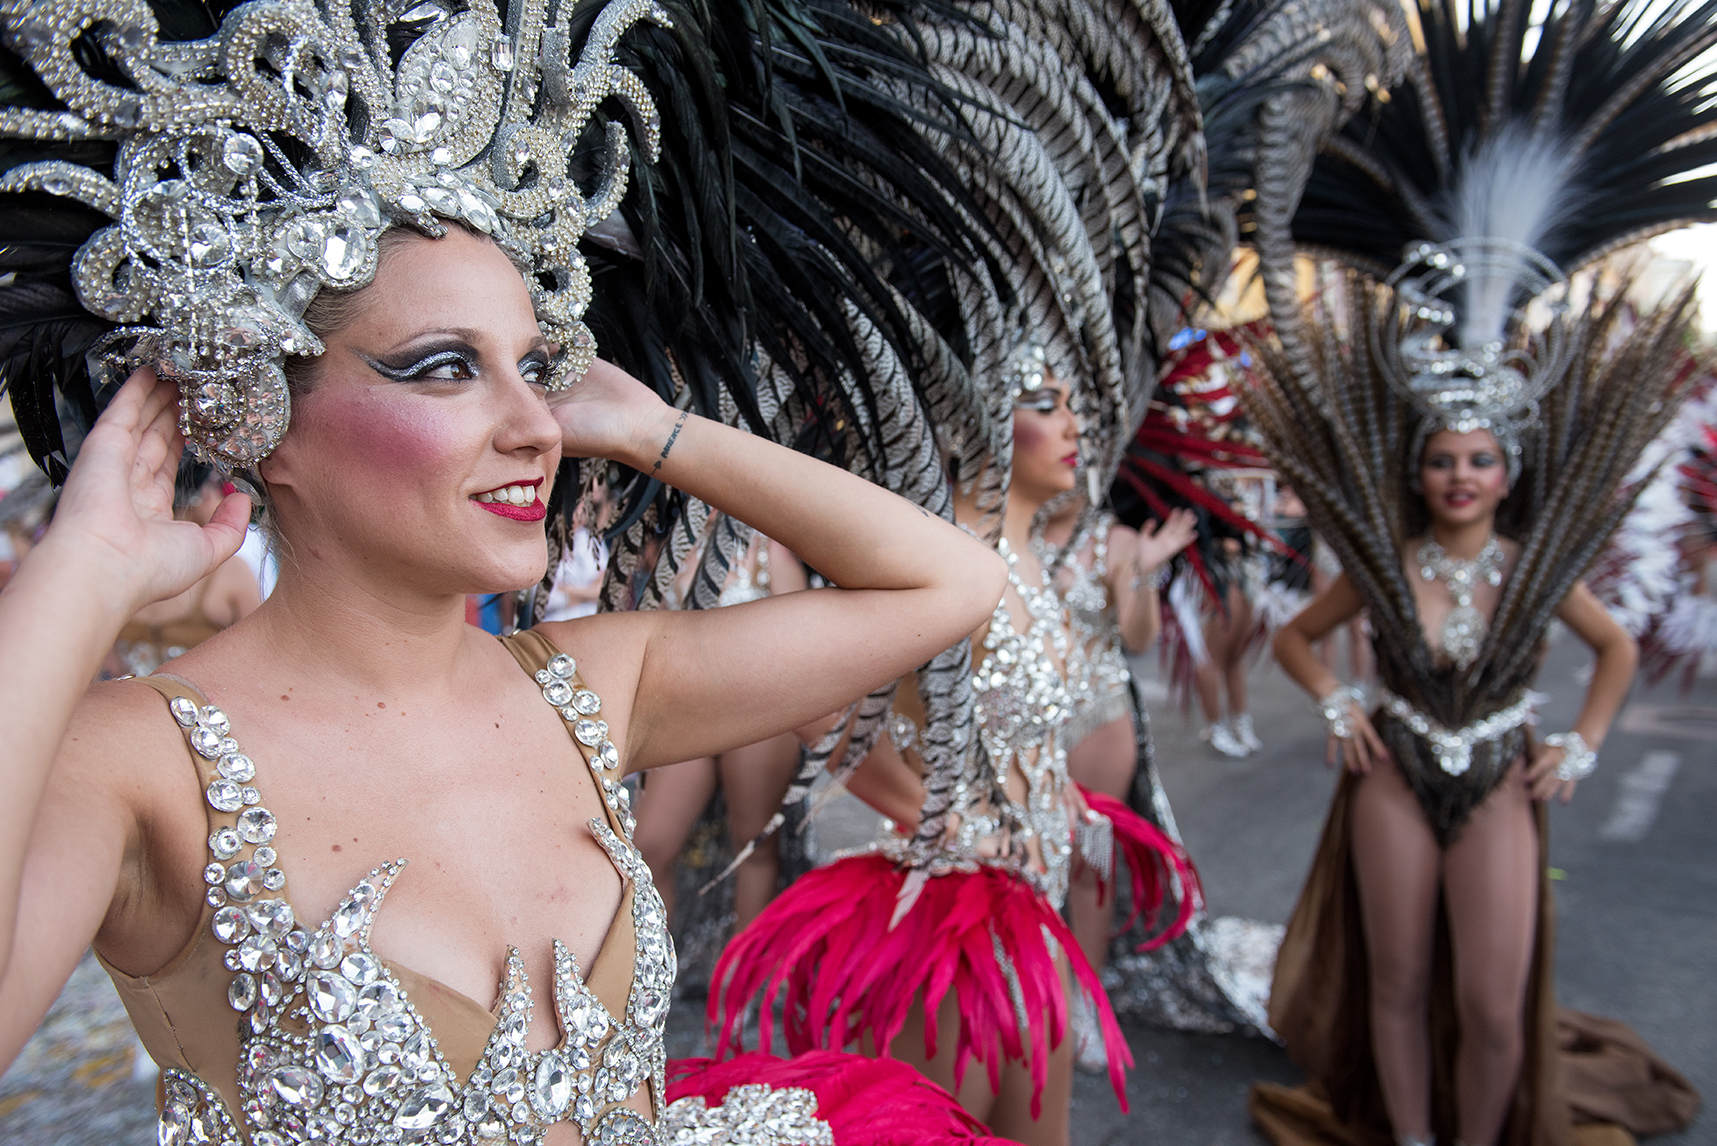 Carnavali d'Aiacciu : focus sur la troupe "Exotica Danse"